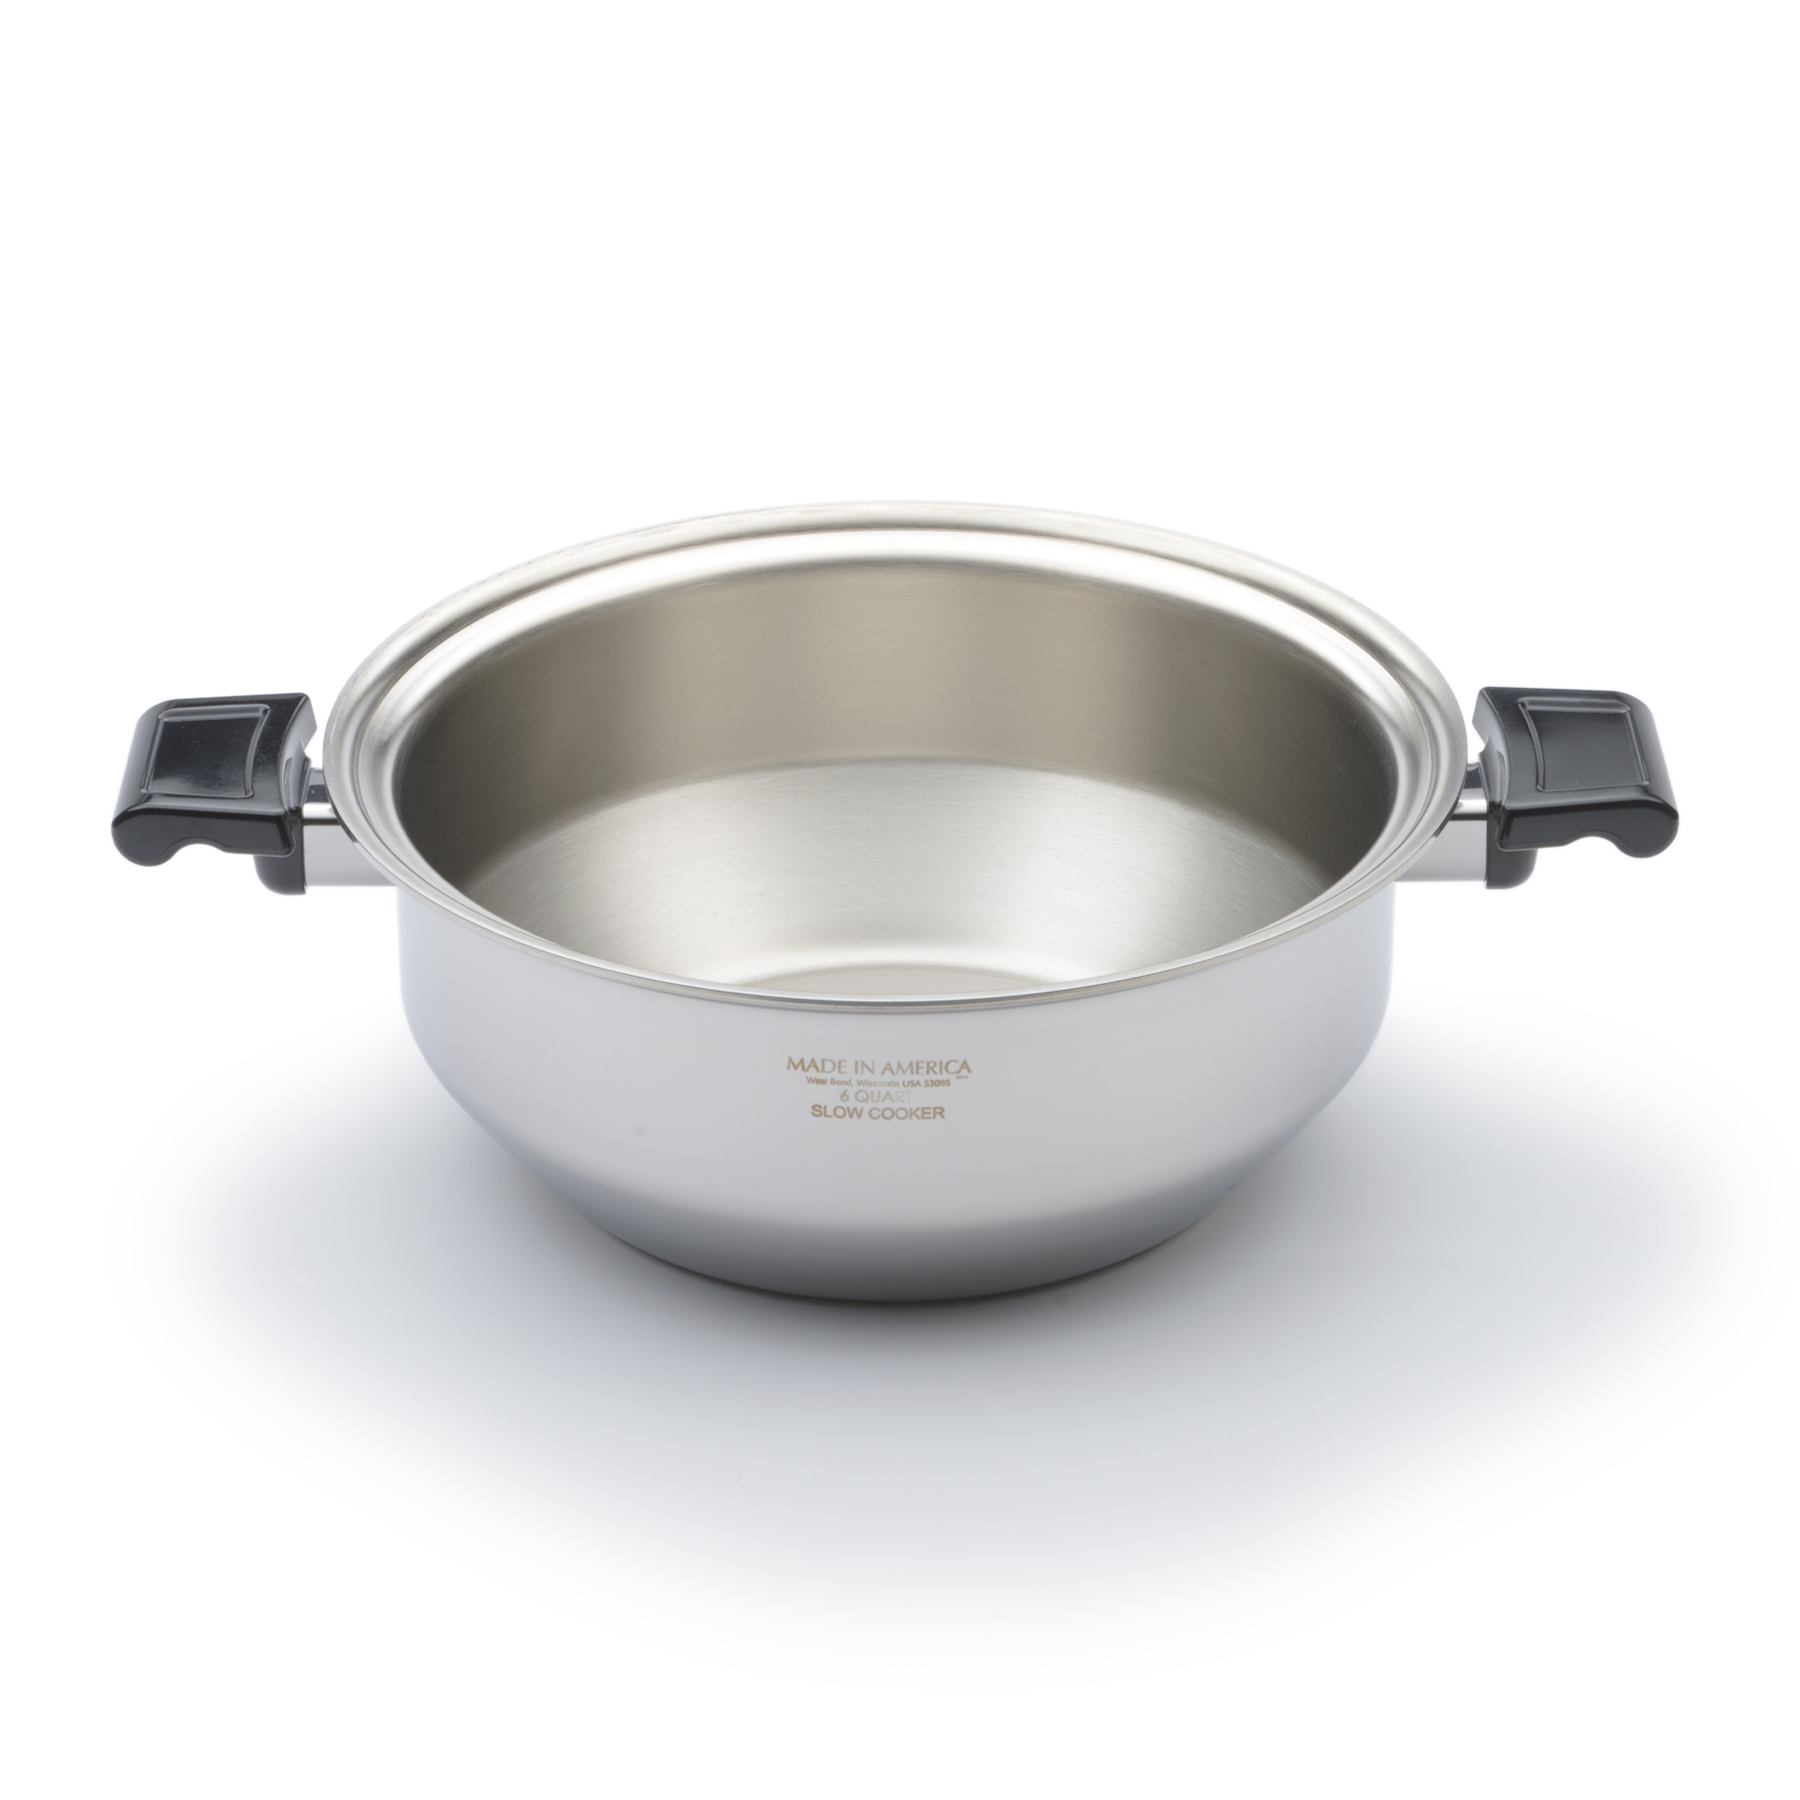 360 Cookware 6 Quart Gourmet Stainless Steel Stockpot